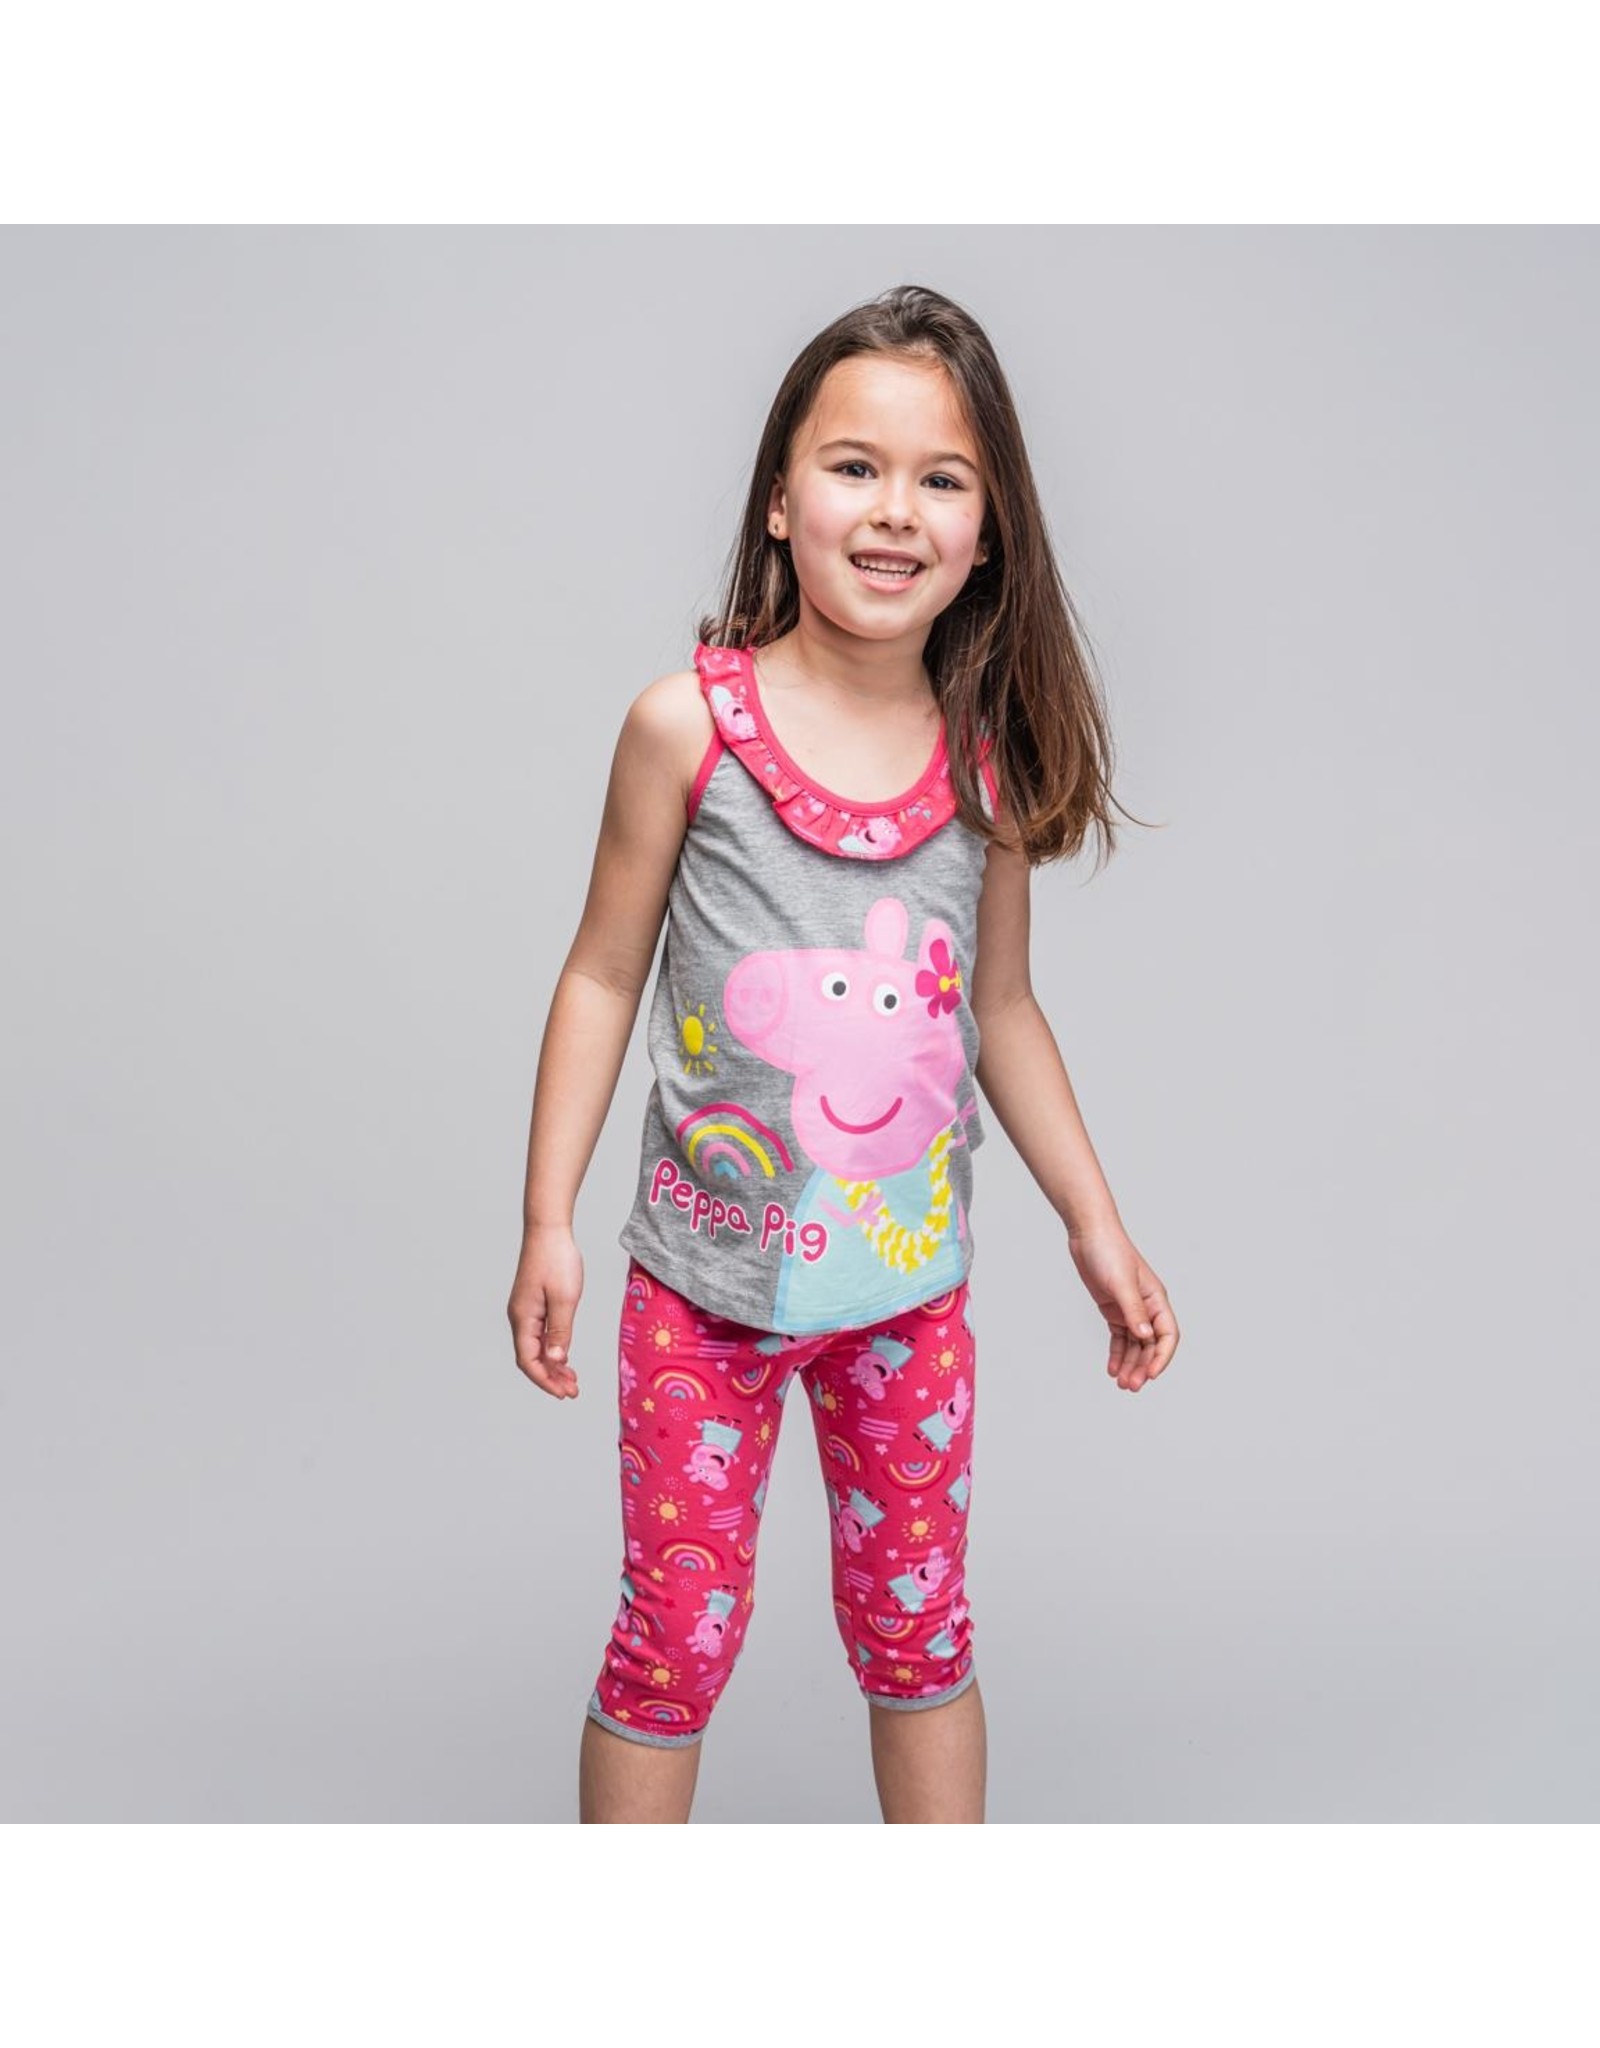 Peppa Pig Peppa Pig Kinderkleding Meisjes